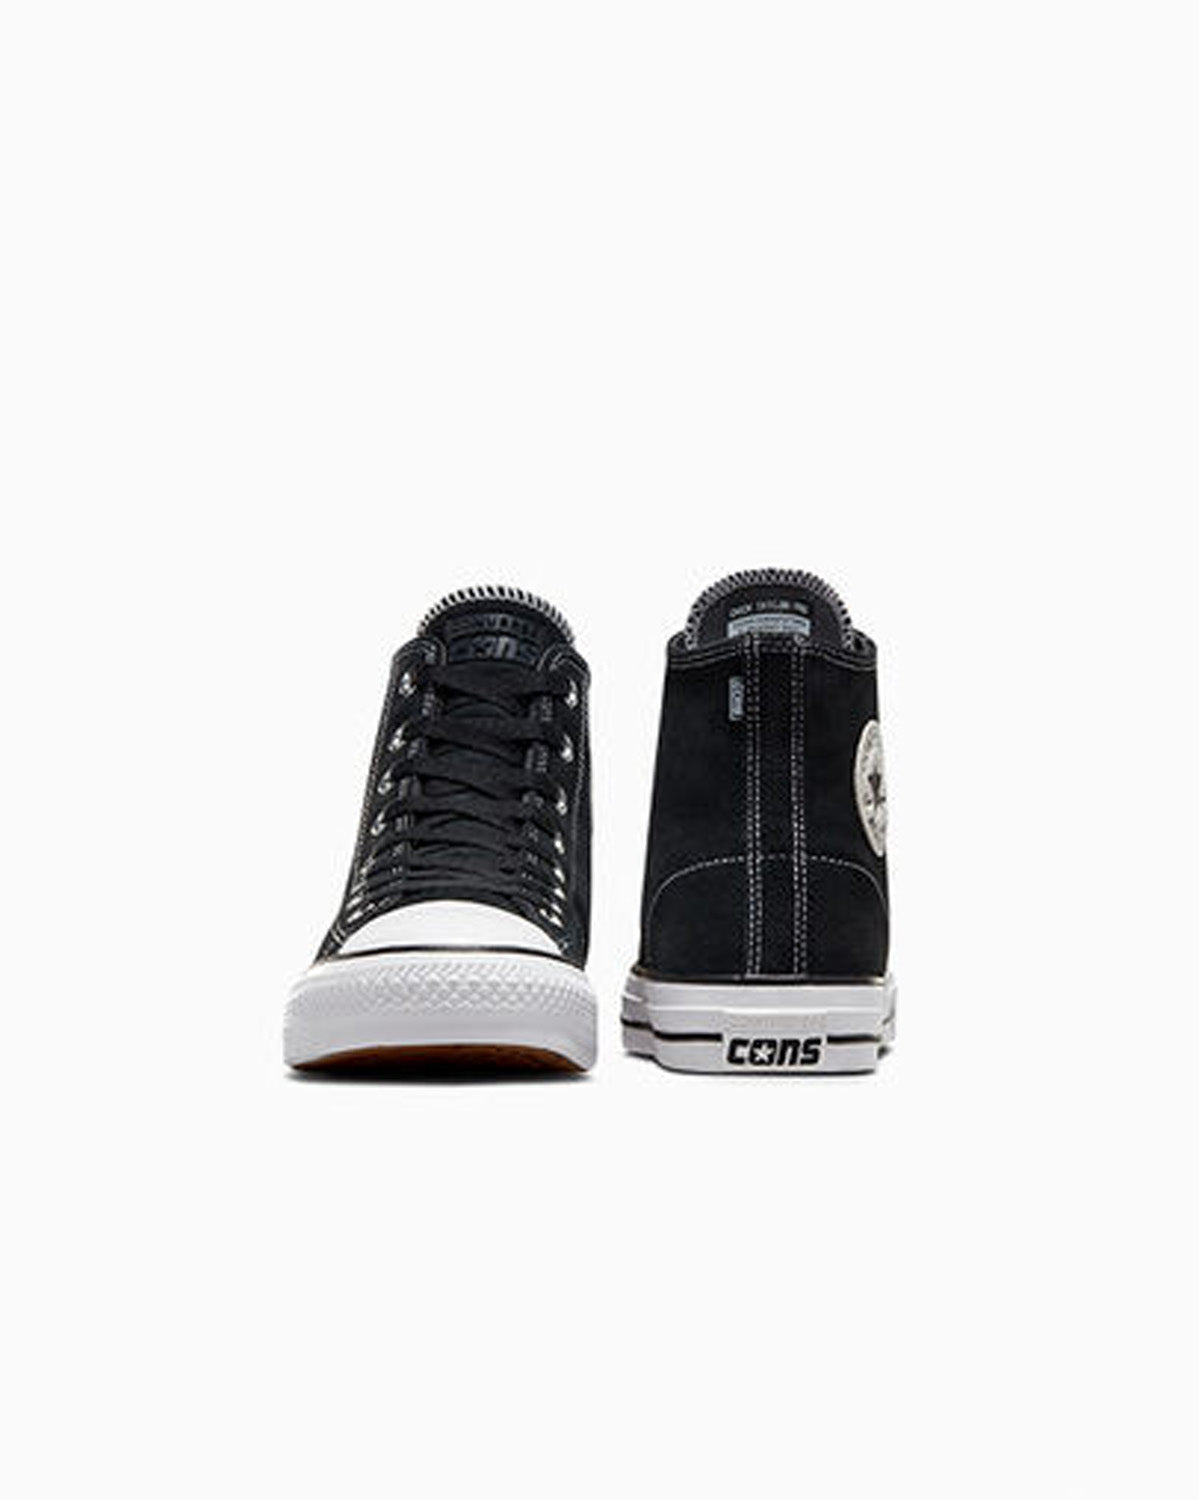 Converse CONS CTAS Pro Hi Black/Black/White - Orchard Skateshop